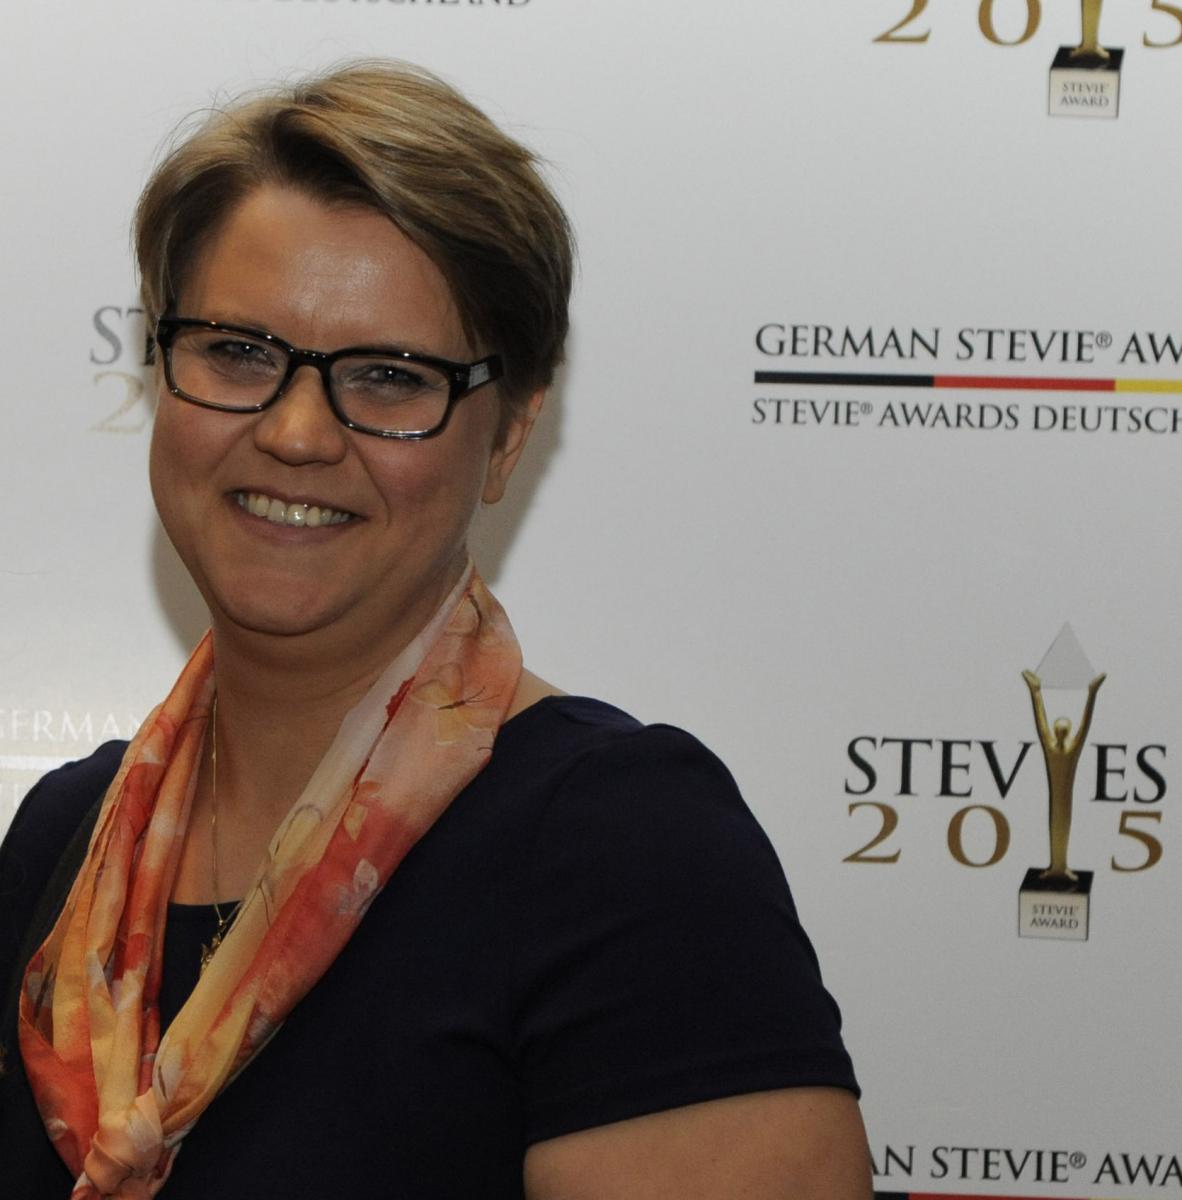 Catrin Beu, PR und Medienarbeit Stevie Awards 